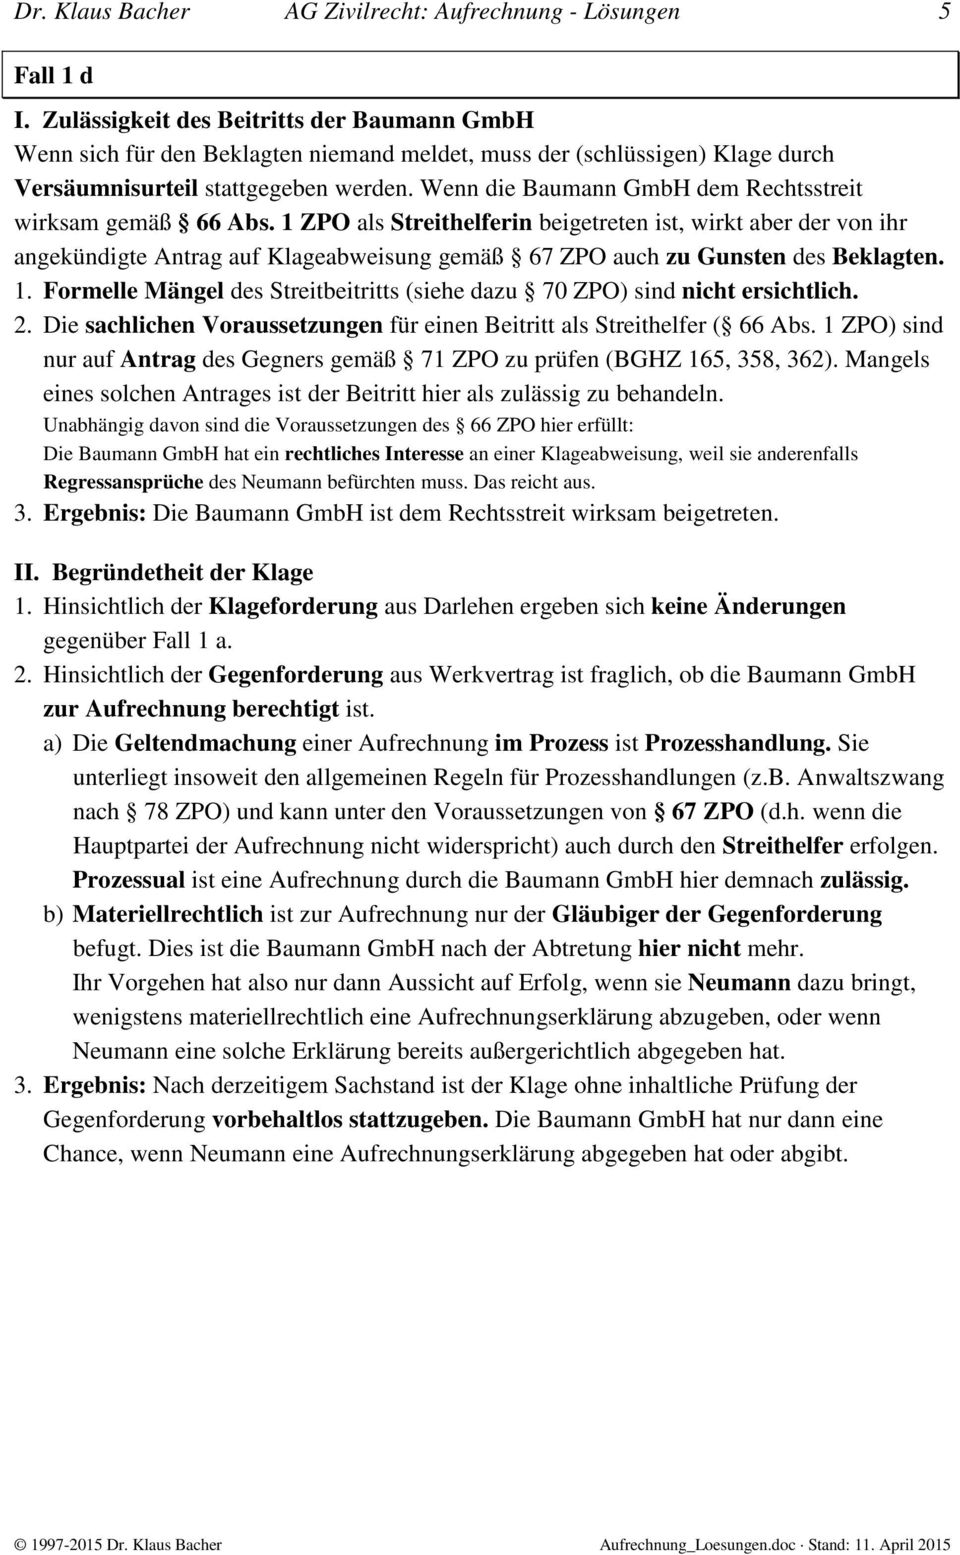 Wenn die Baumann GmbH dem Rechtsstreit wirksam gemäß 66 Abs.